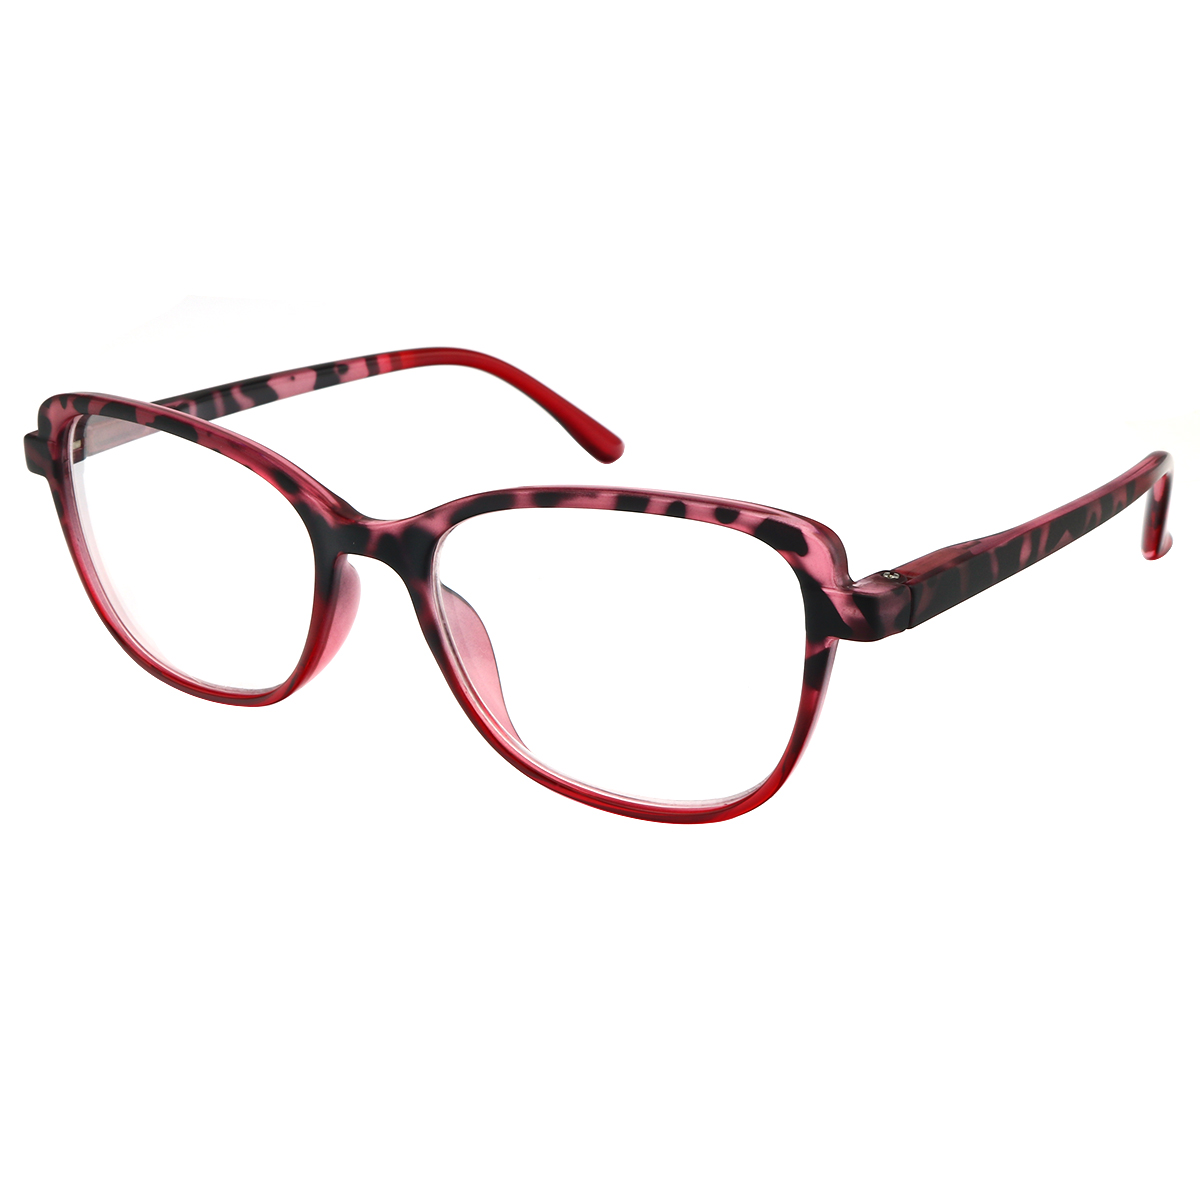 Felicia - Cat-eye Red Reading Glasses for Women